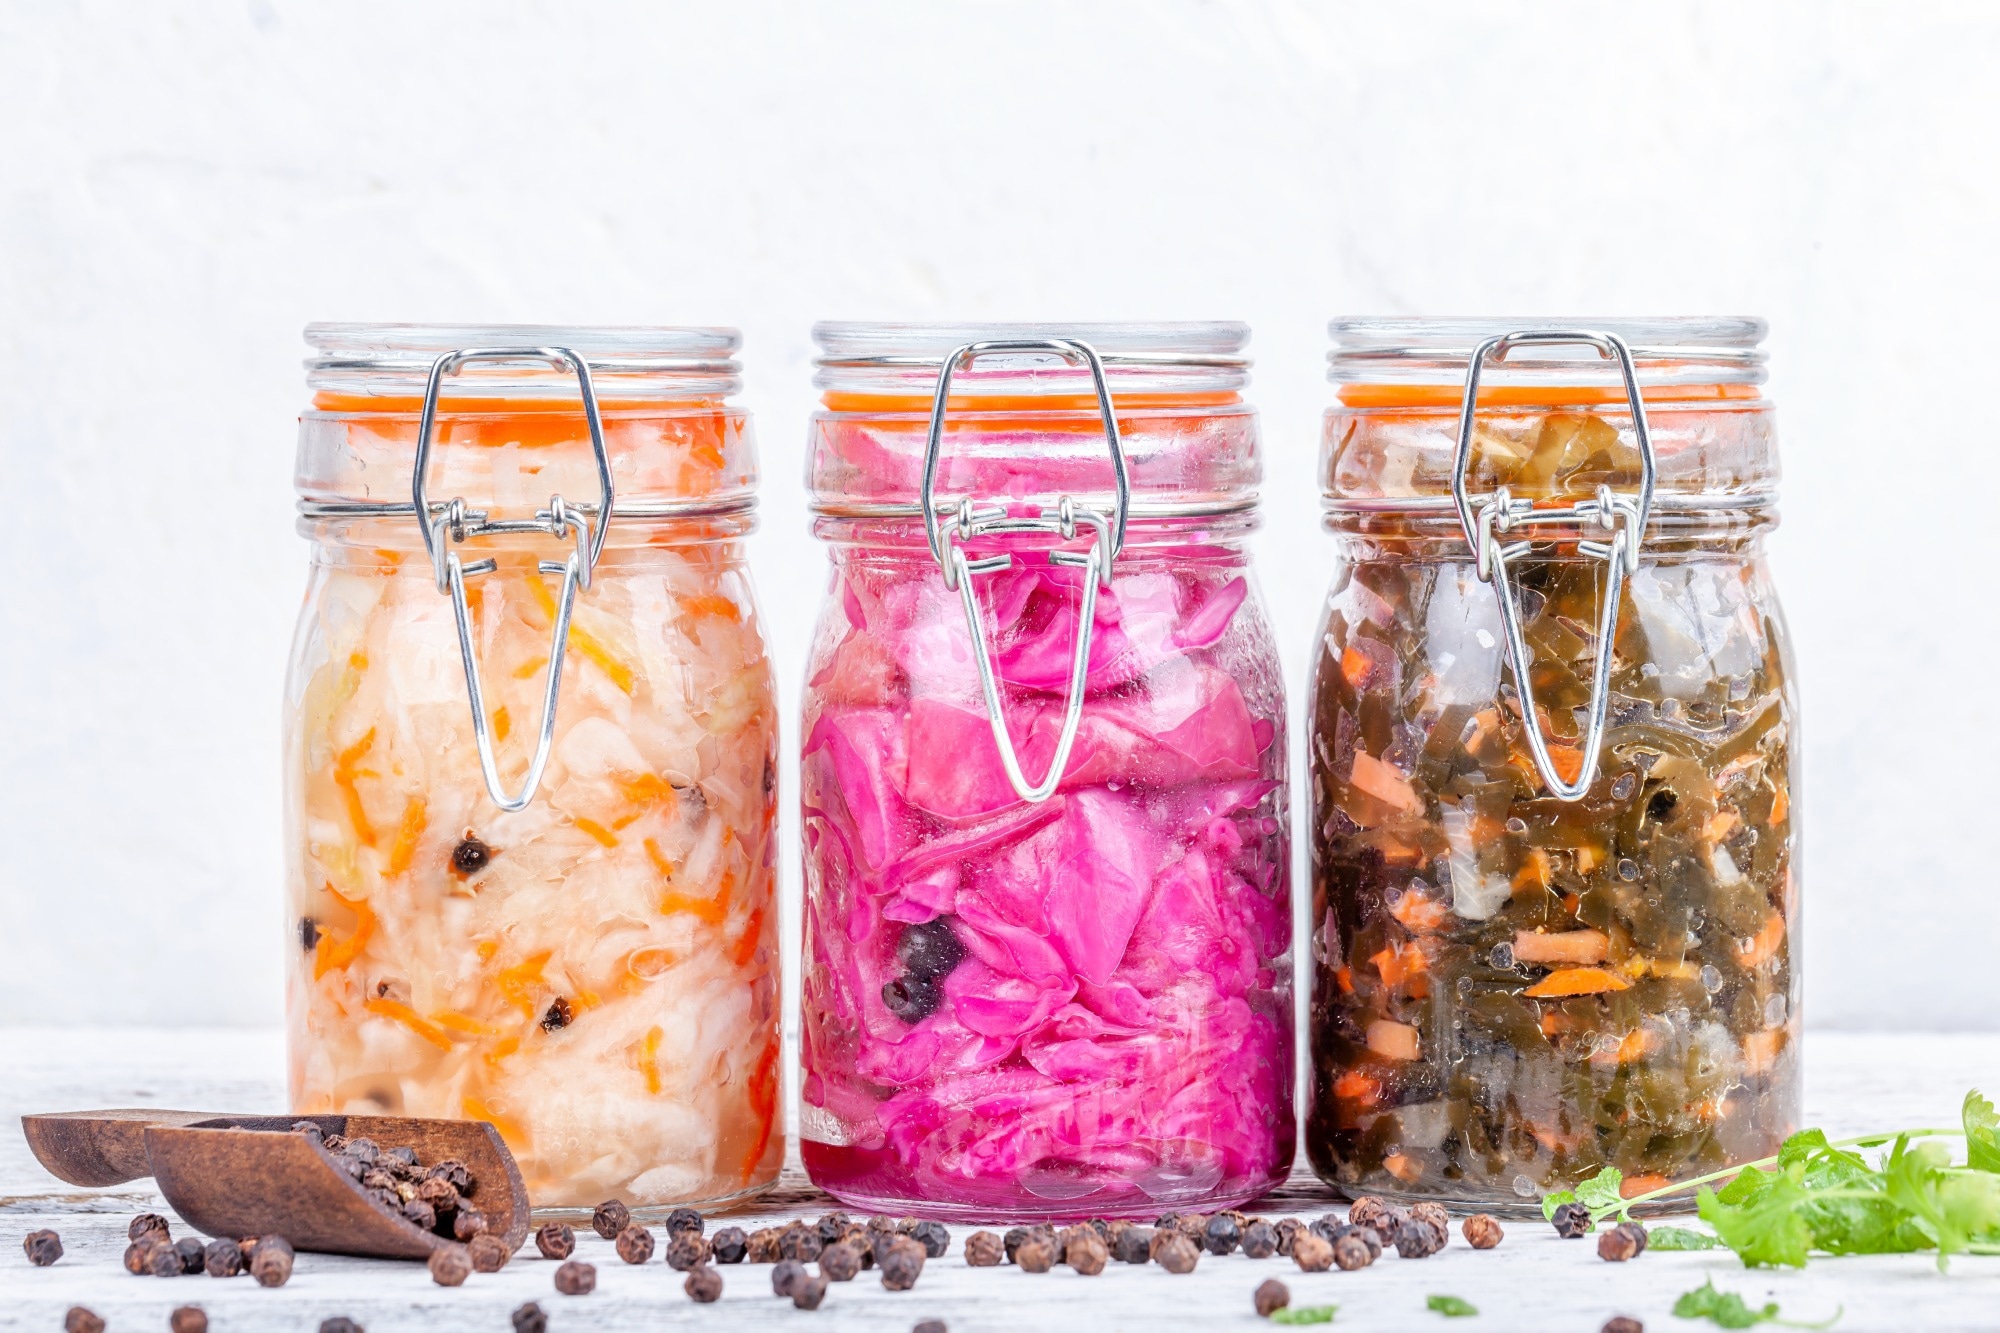 Gli alimenti fermentati sono collegati a benefici per la salute mentale attraverso la connessione tra l’intestino e il cervello